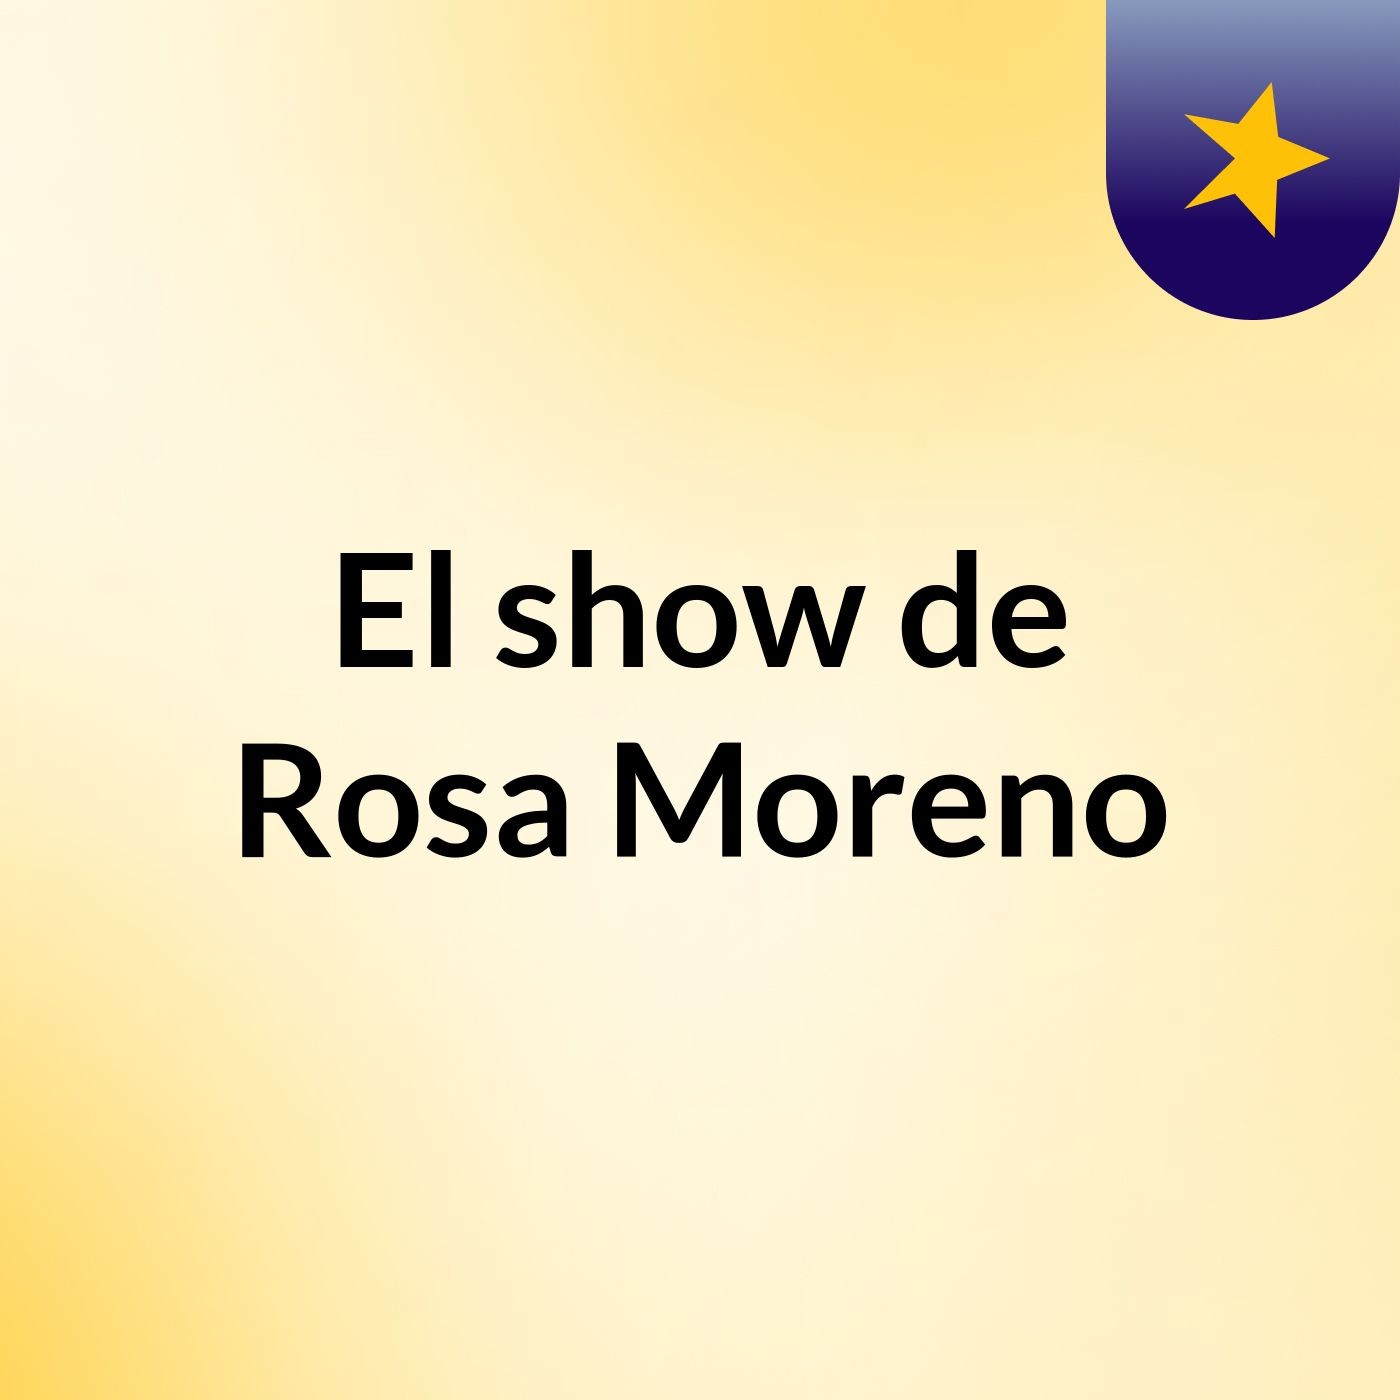 El show de Rosa Moreno